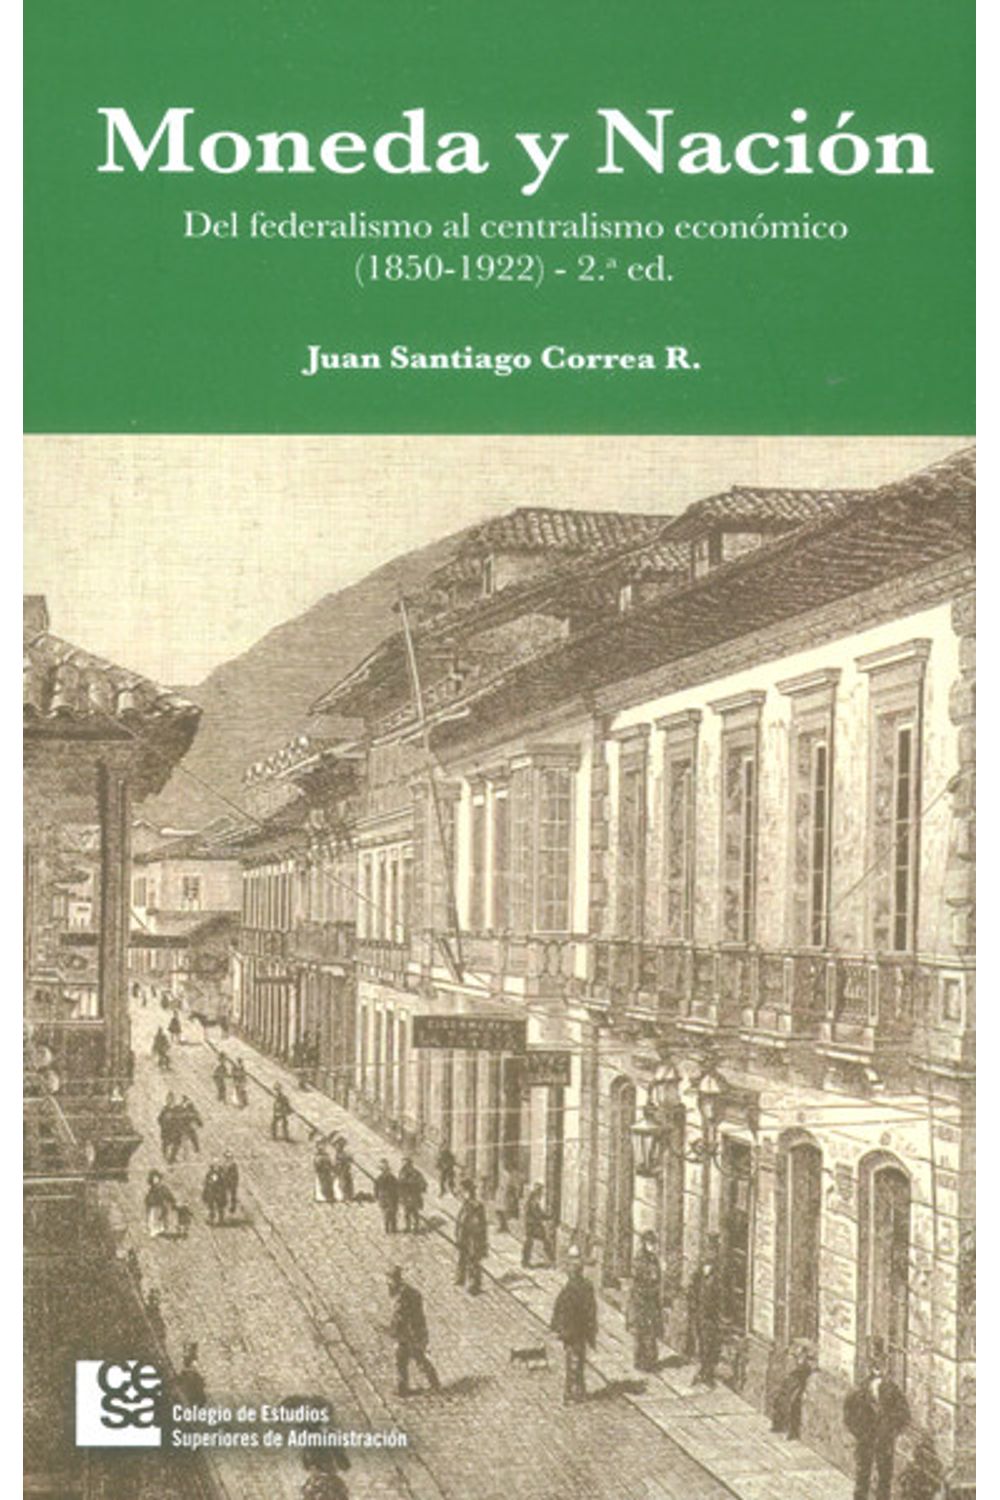 moneda-y-nacion-del-federalismo-al-centralismo-economico-1850-1922-2da-edicion-9789588988078-cesa